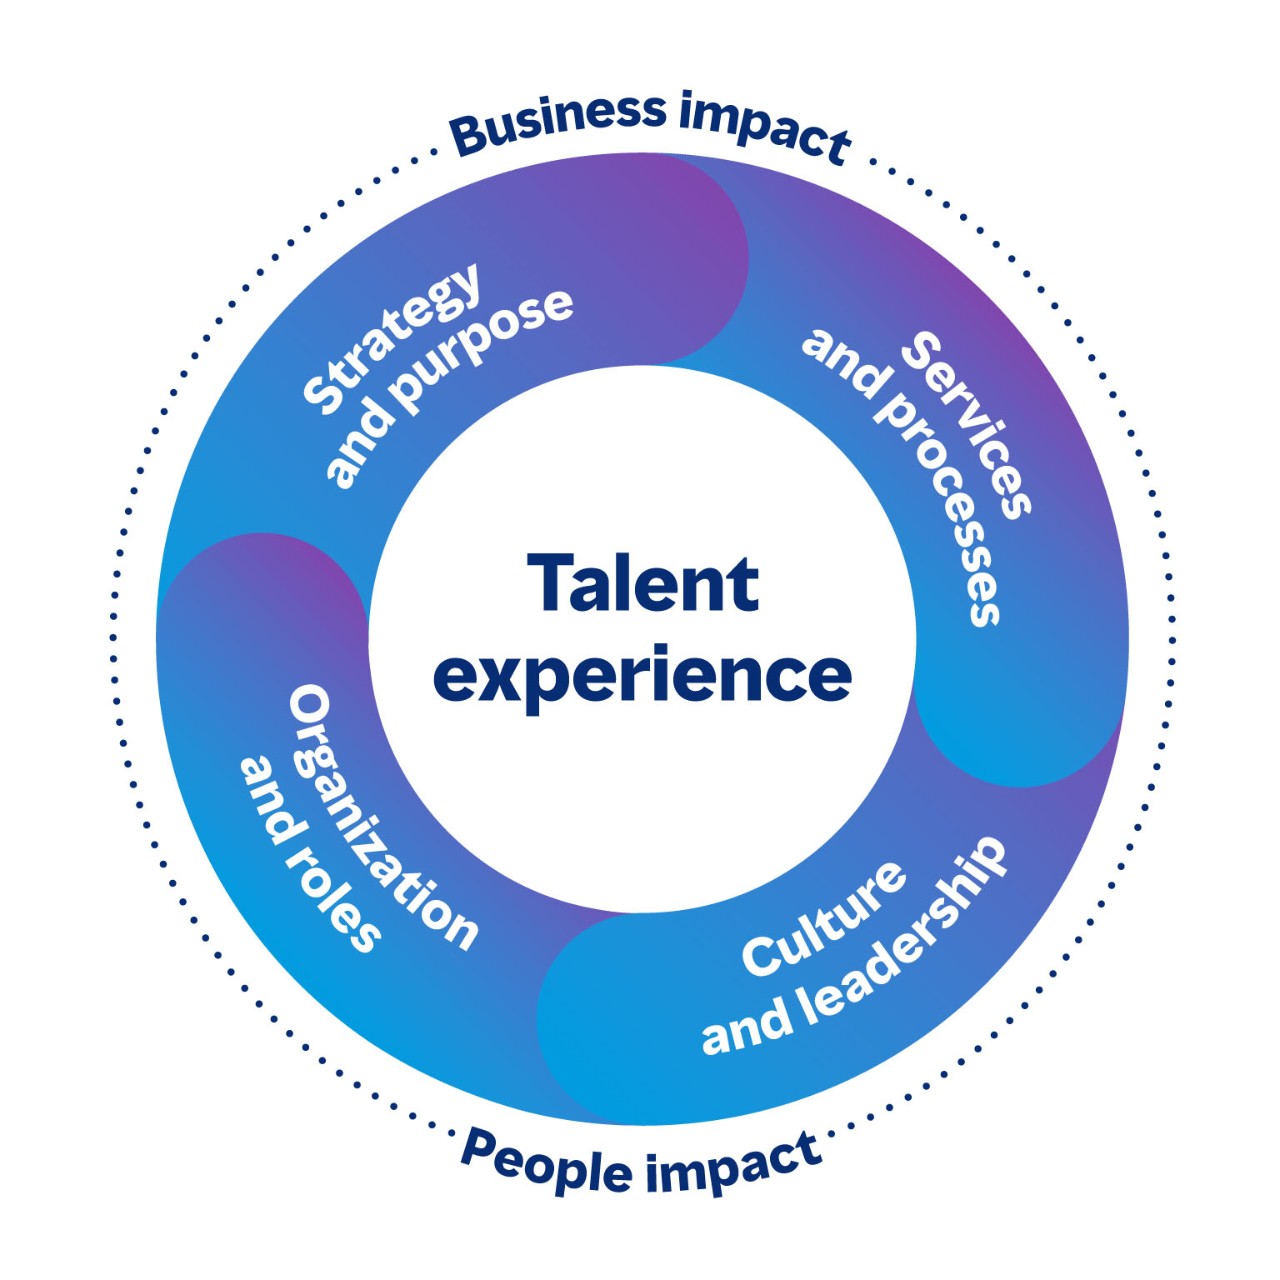 Sirkulært bilde som viser de tilkoblede områdene av talentopplevelsen som har både en virksomhet og innvirkning på mennesker. De fire områdene er strategi og formål, tjenester og prosesser, kultur og lederskap samt organisasjon og stillinger.